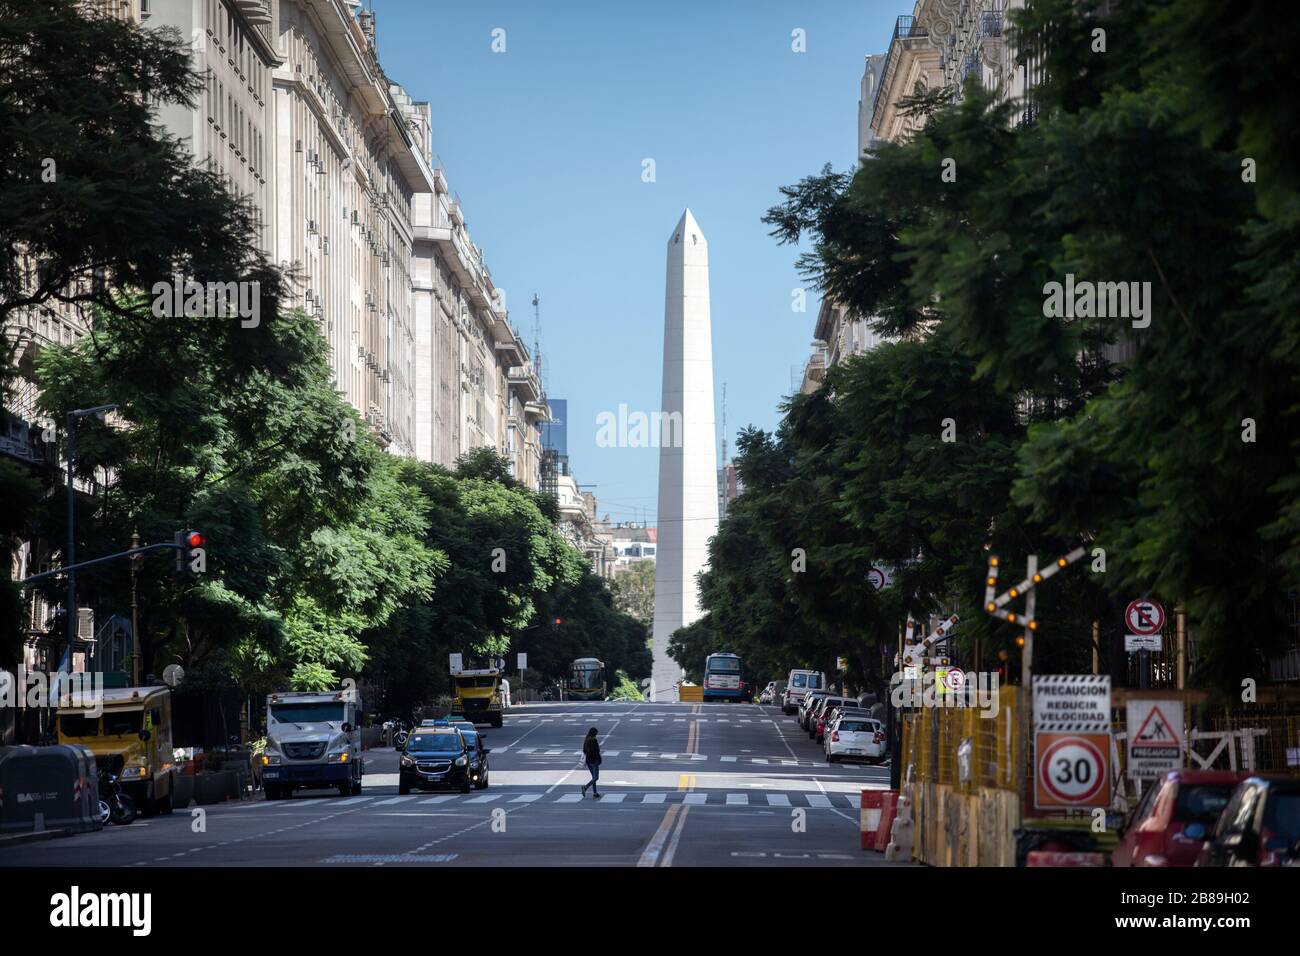 Buenos Aires, Argentinien - 20. März 2020: Unidentifizierte Person, die am Tag nach dem Ausnahmezustand allein in der Innenstadt von Buenos Aires spazieren ging Stockfoto